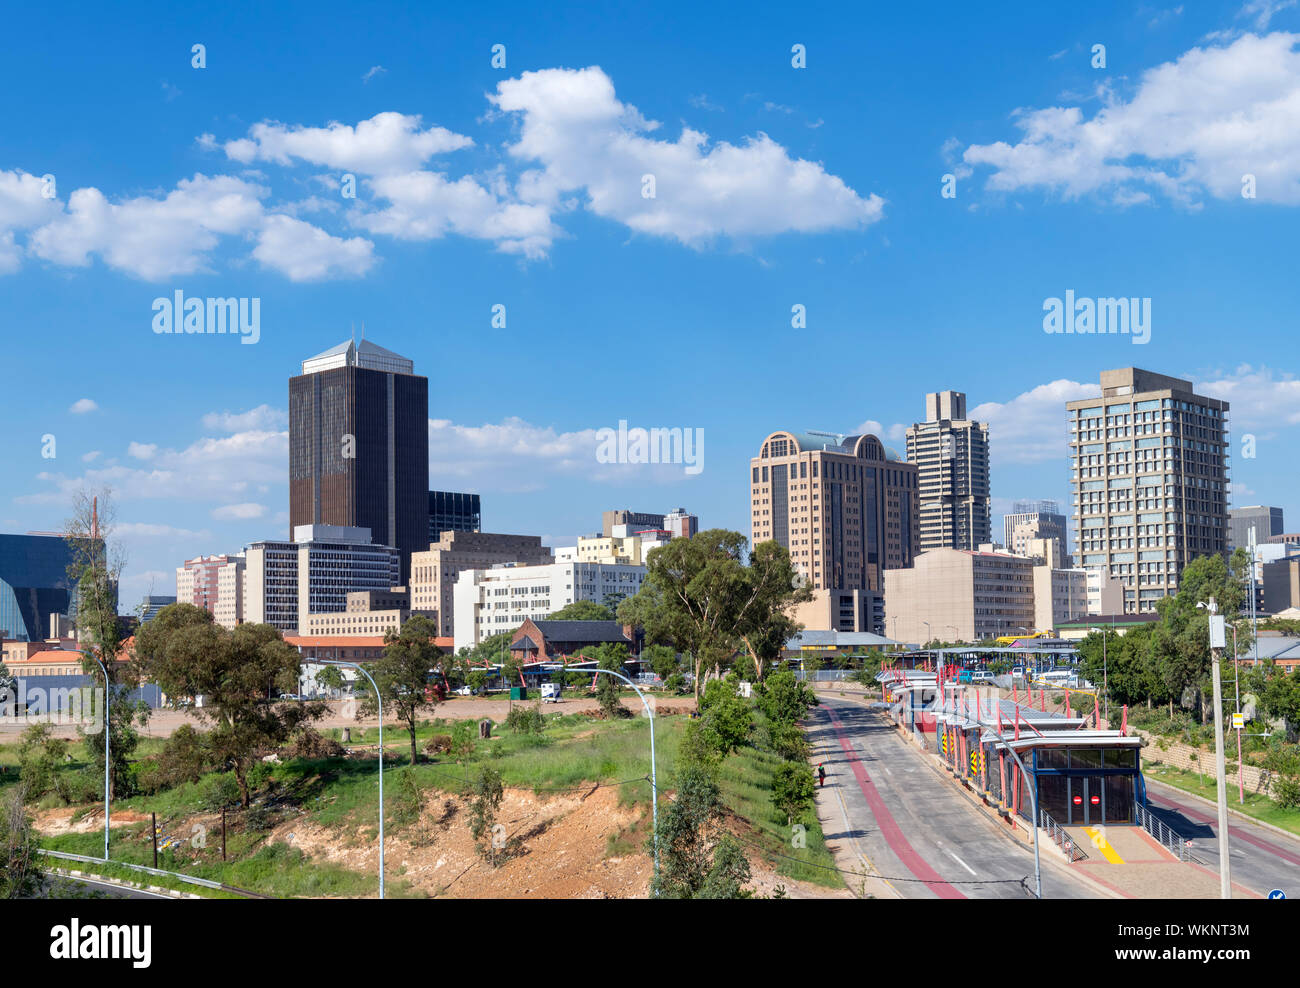 Le Central Business District (CBD) de la M1/M2 interchange, Johannesburg, Afrique du Sud. Banque D'Images